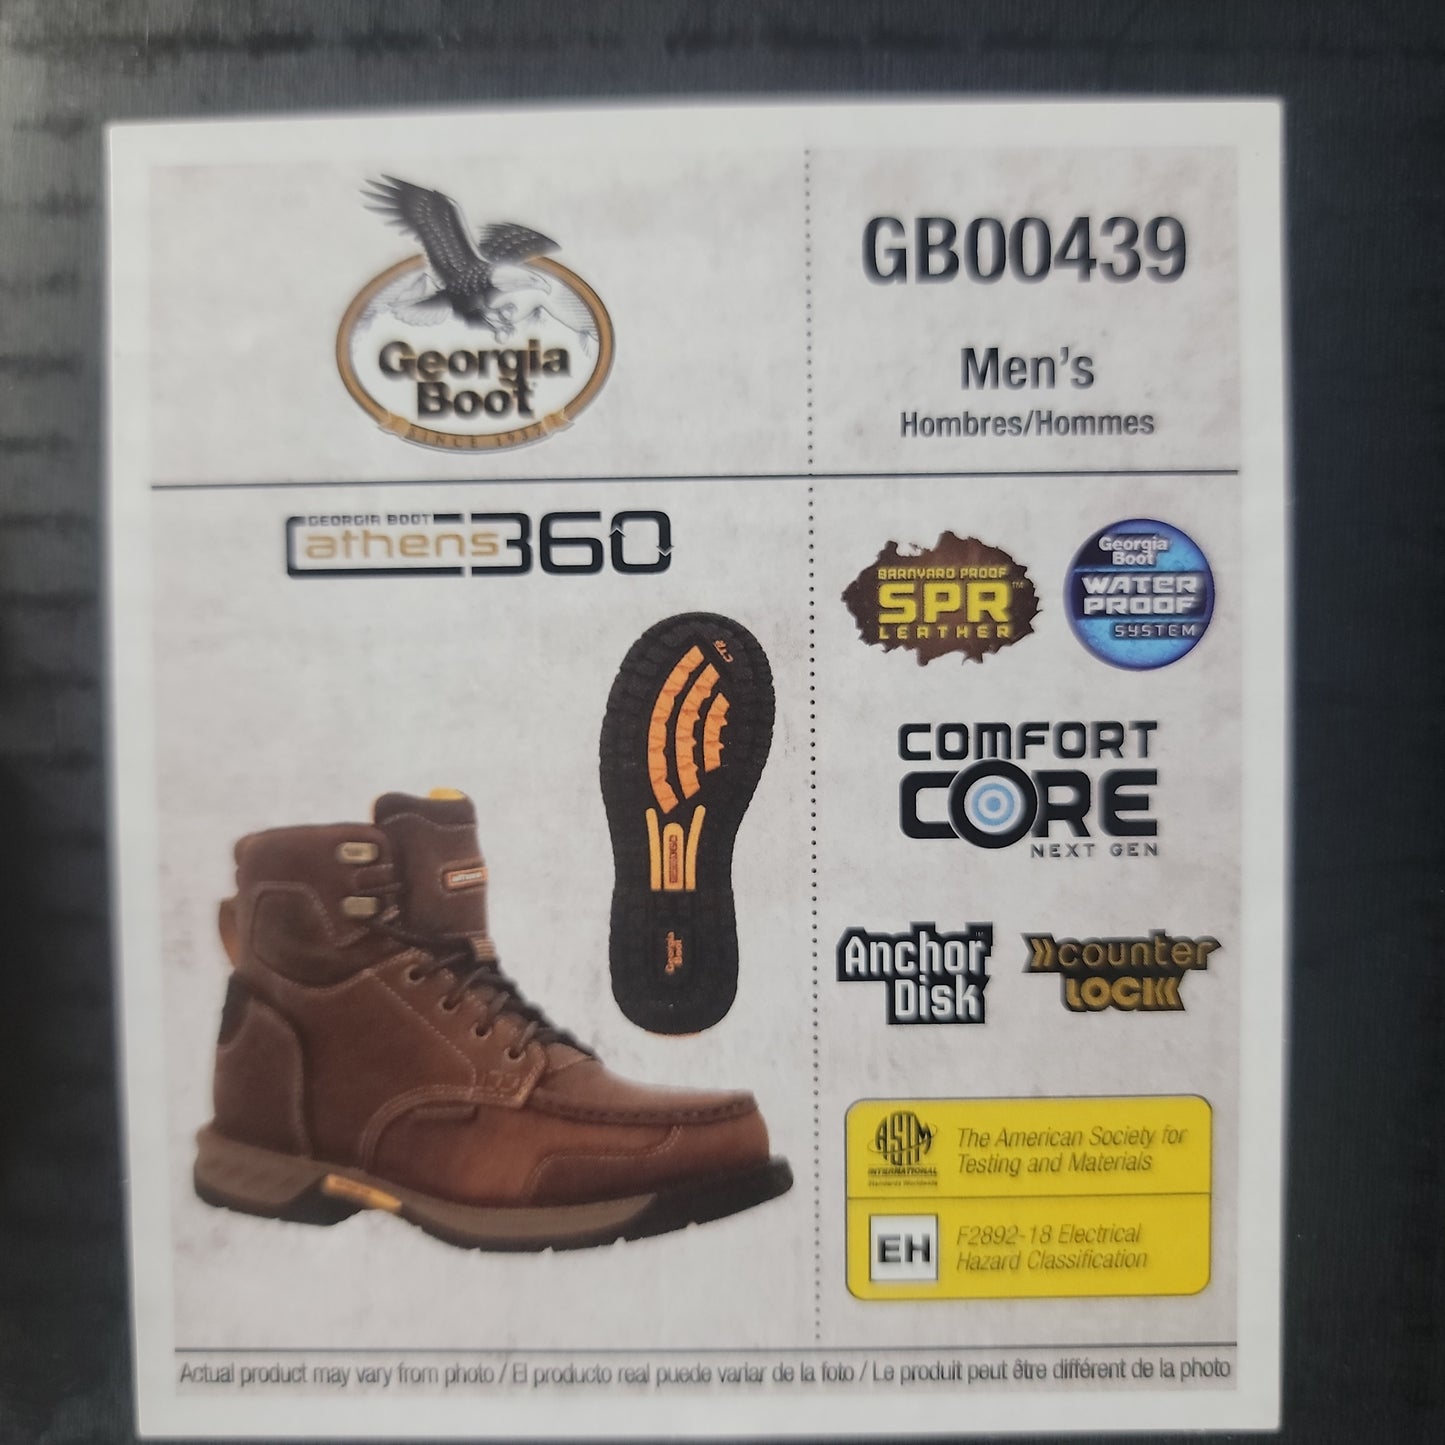 Georgia Boot GB00439